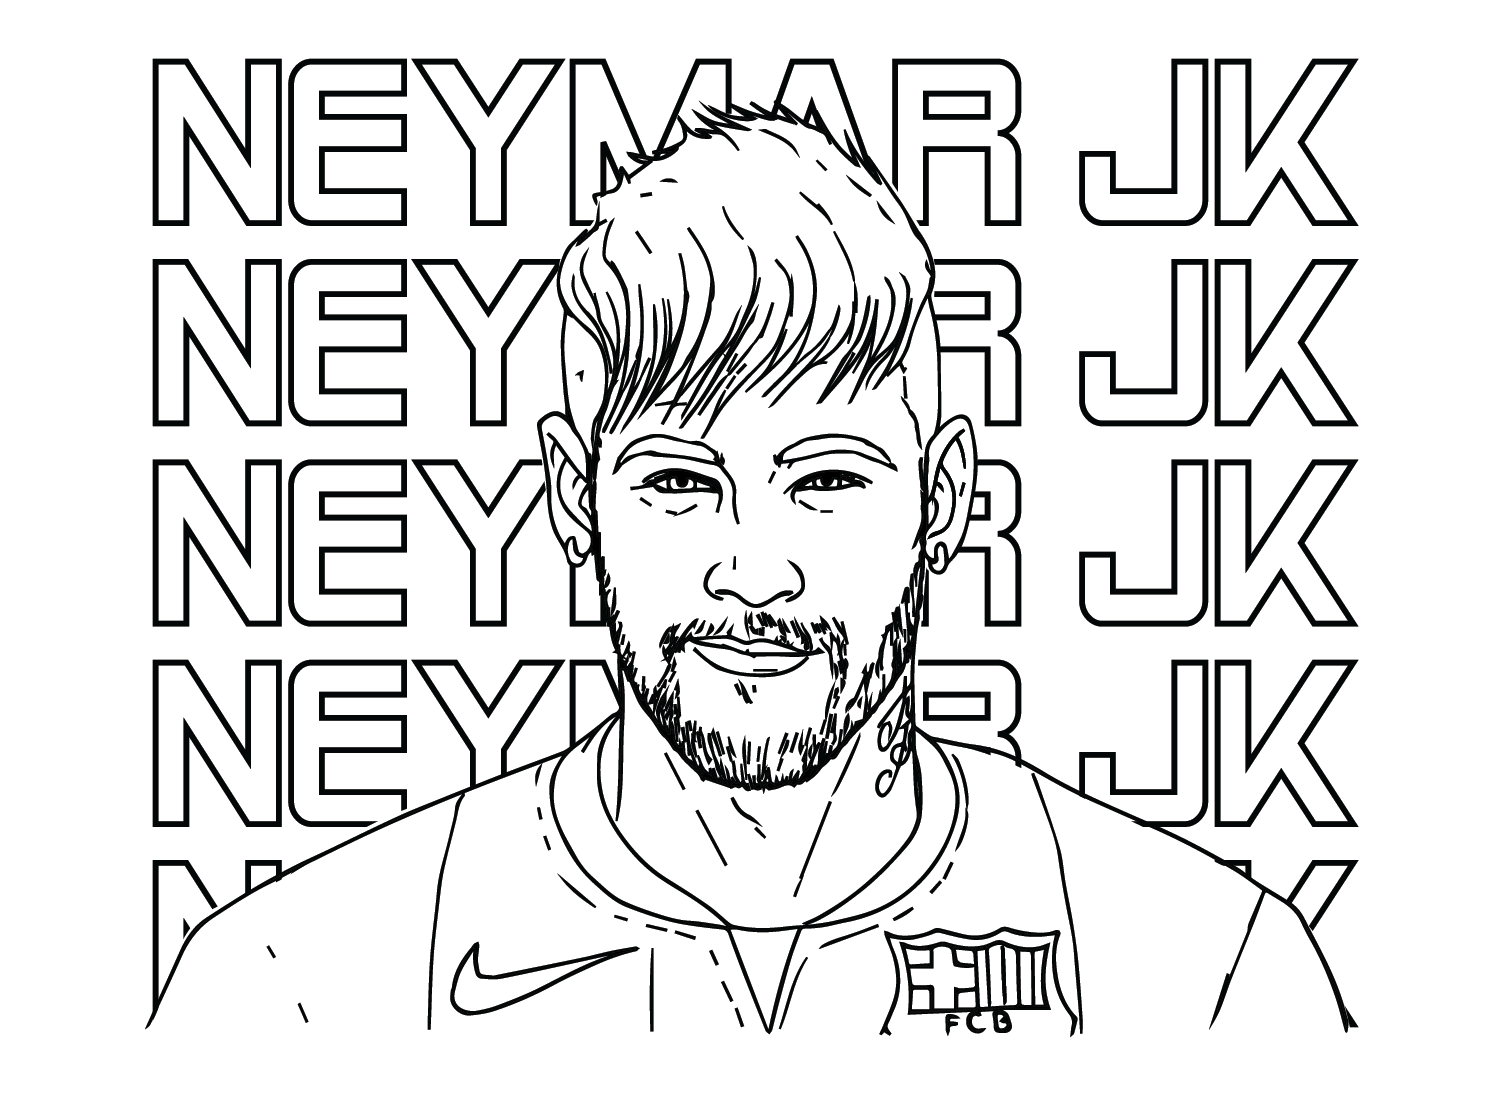 Neymar JK da Neymar